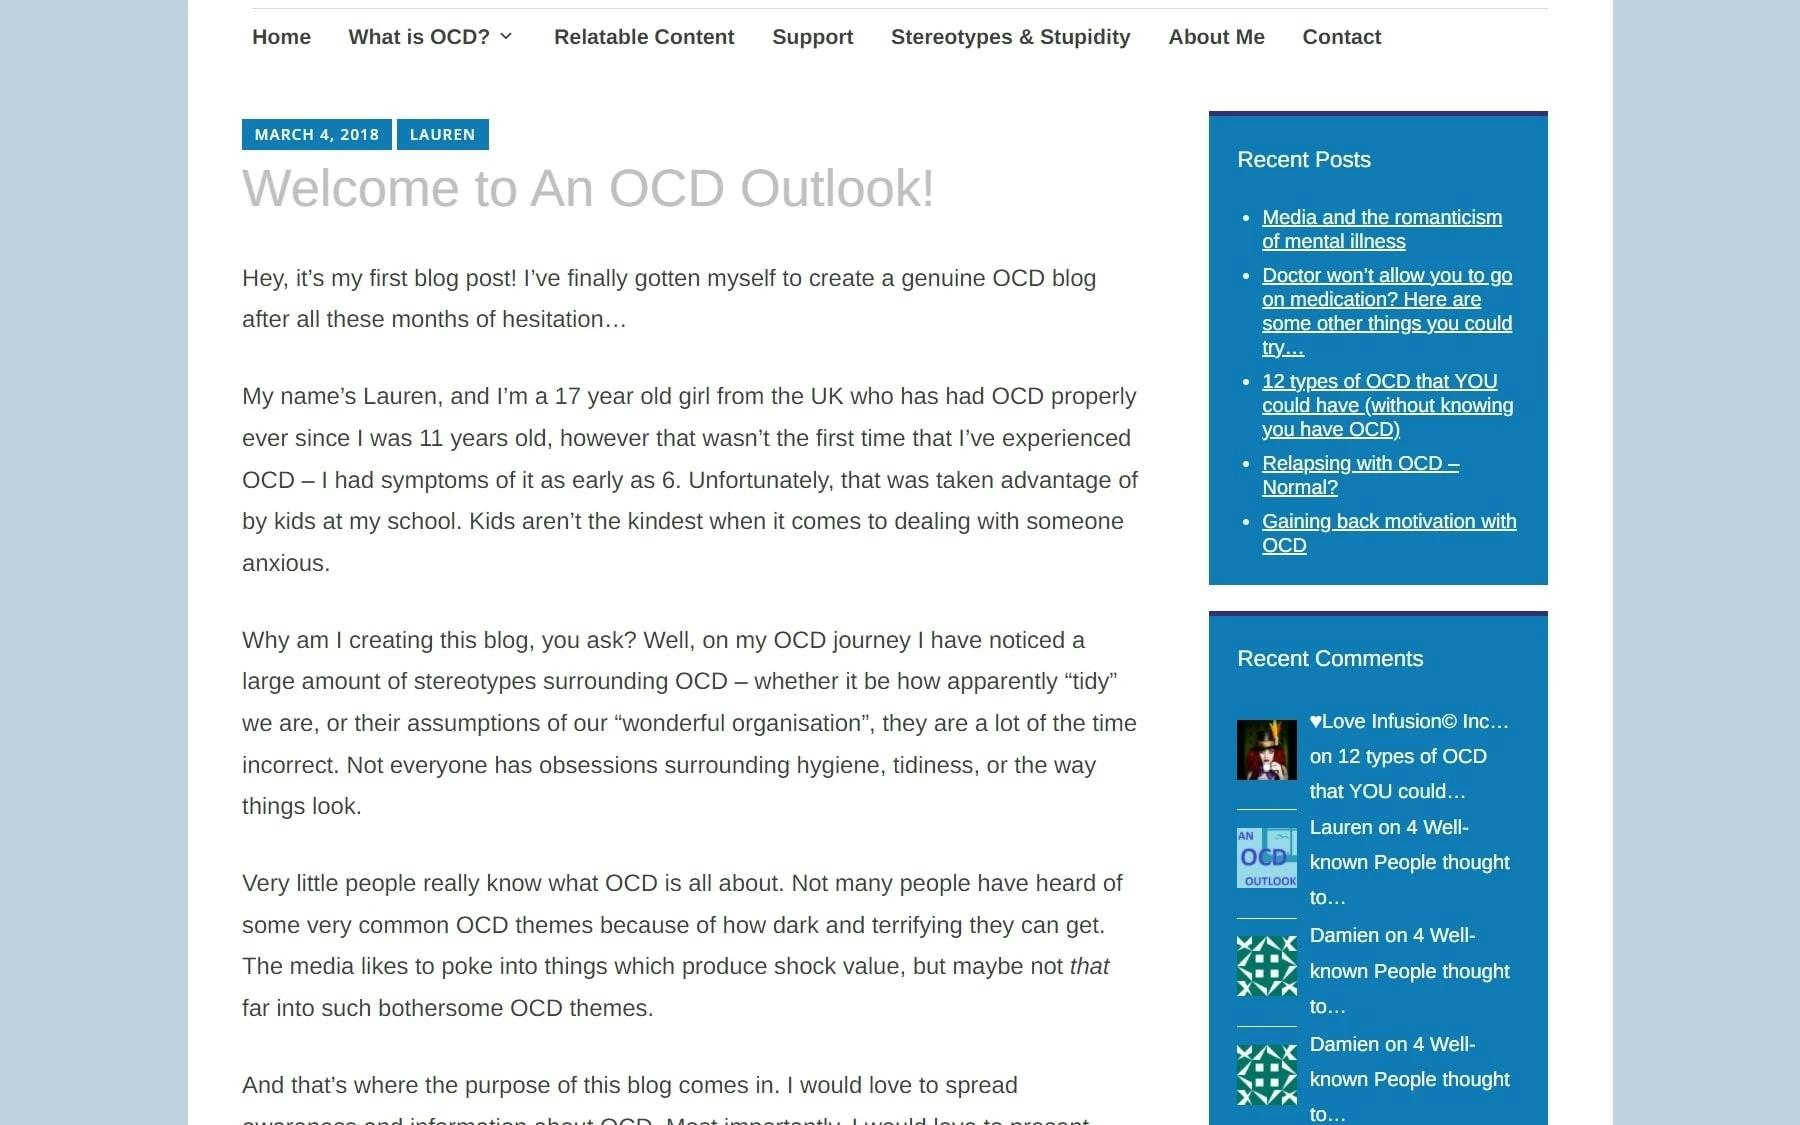 An OCD Outlook first blog post